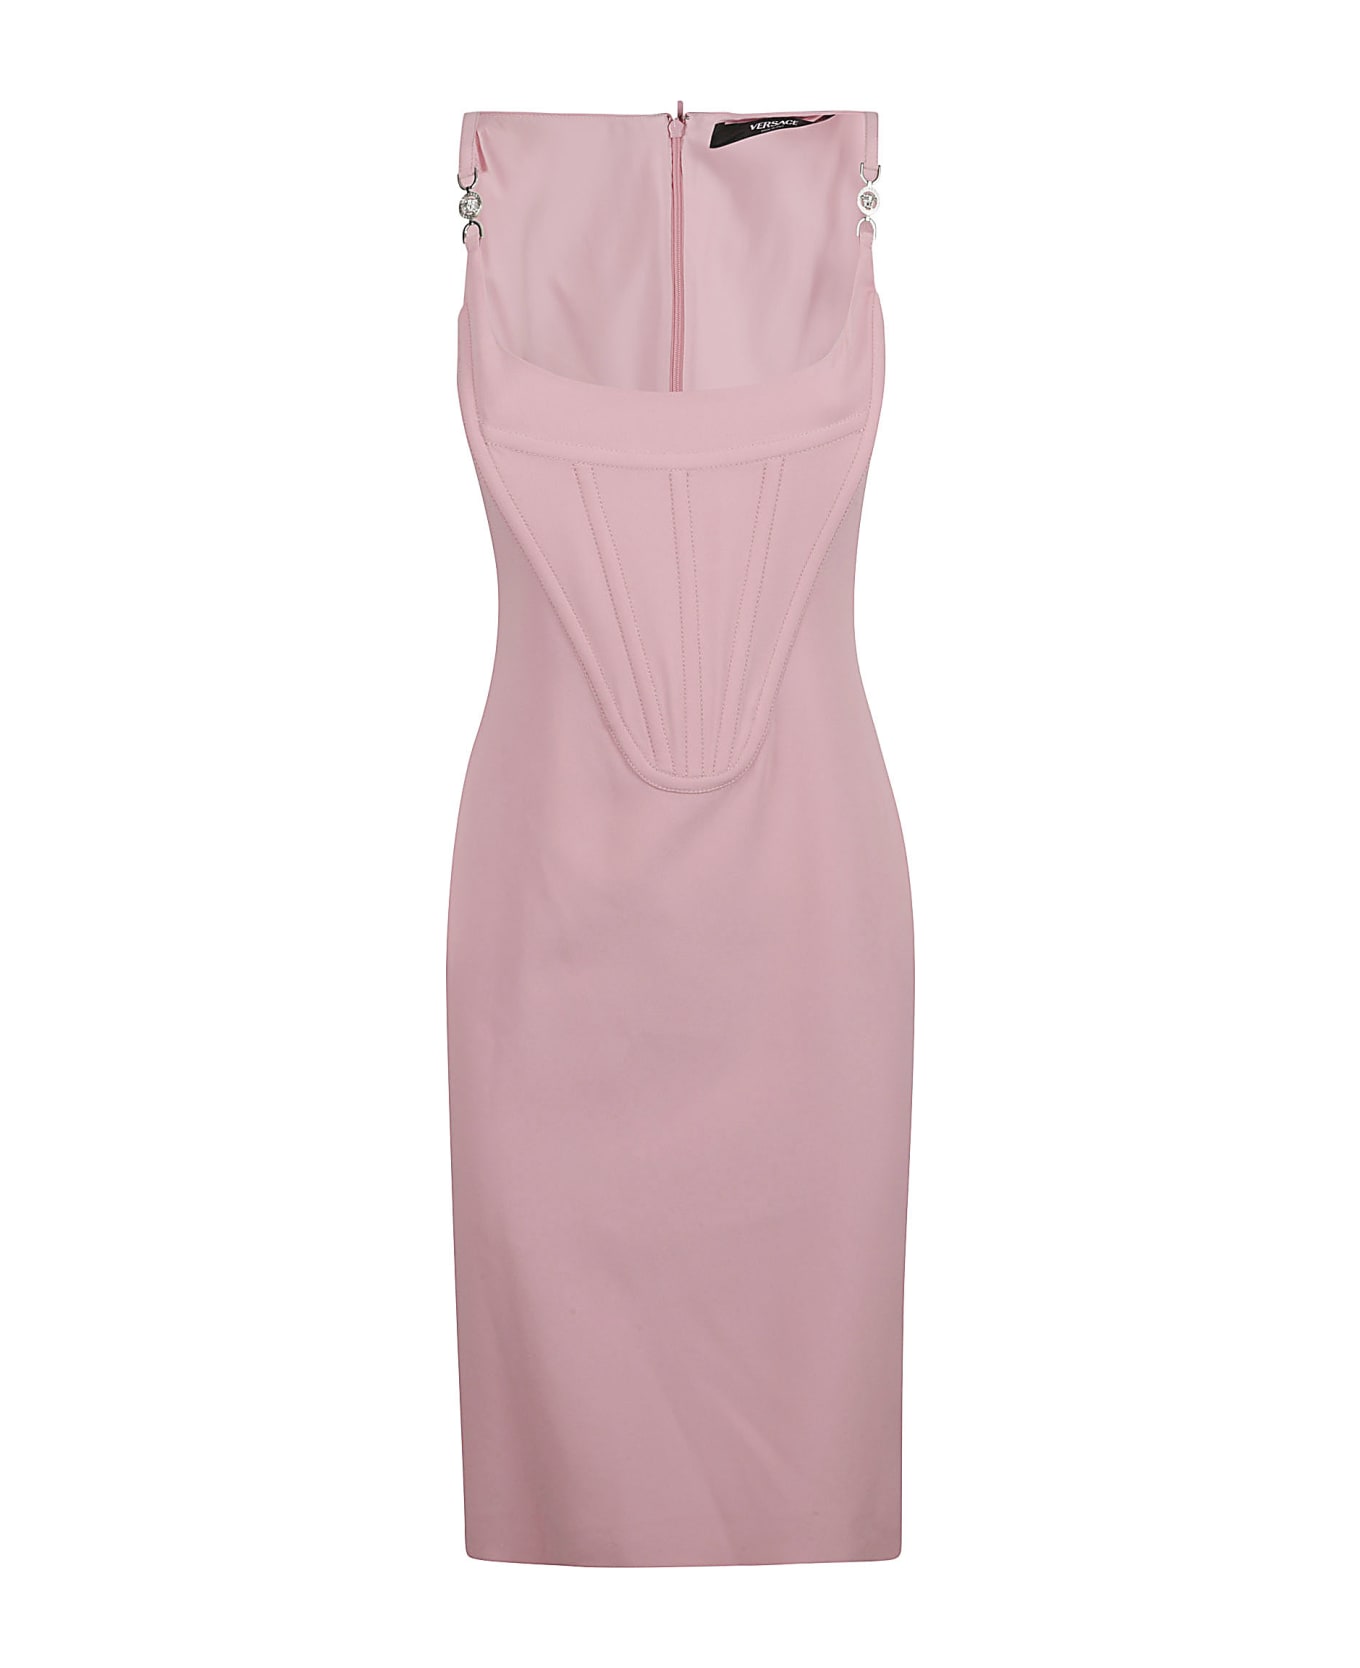 Versace Back Zip Sleeveless Dress - Pink